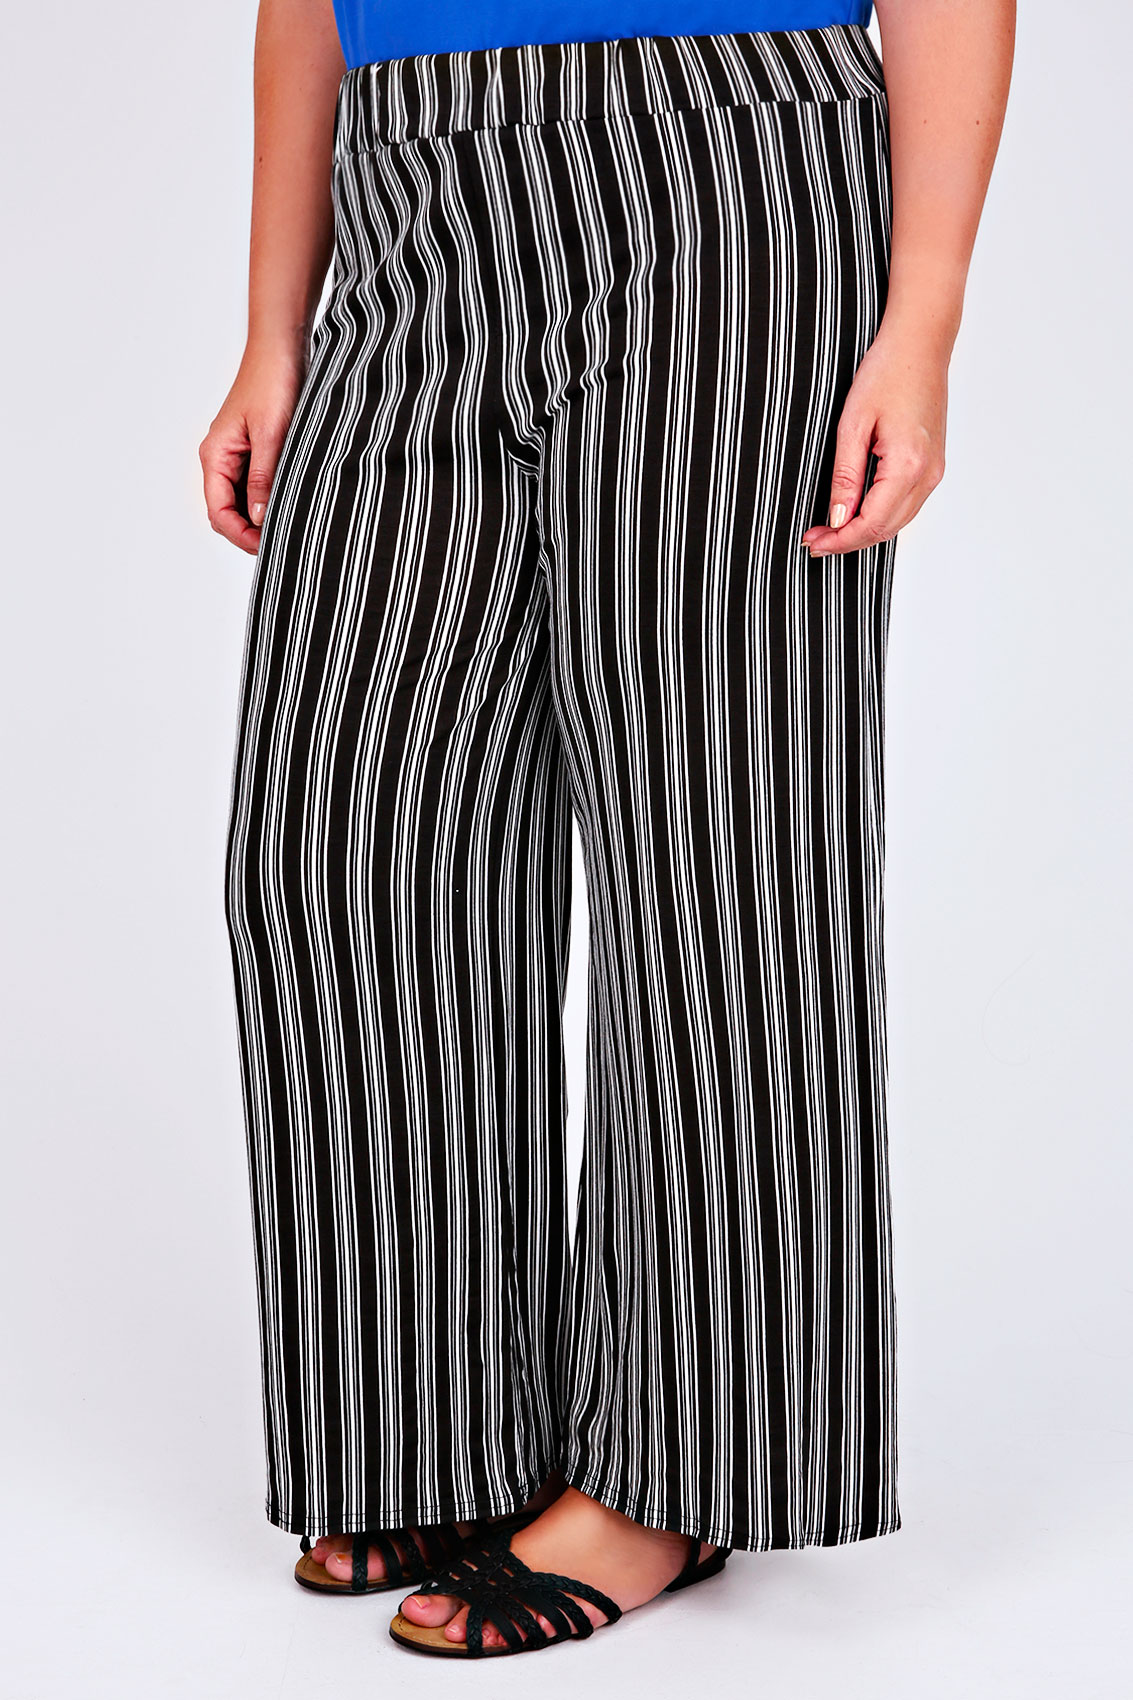 Black & White Stripe Print Wide Leg Trousers Plus Size 16 to 32